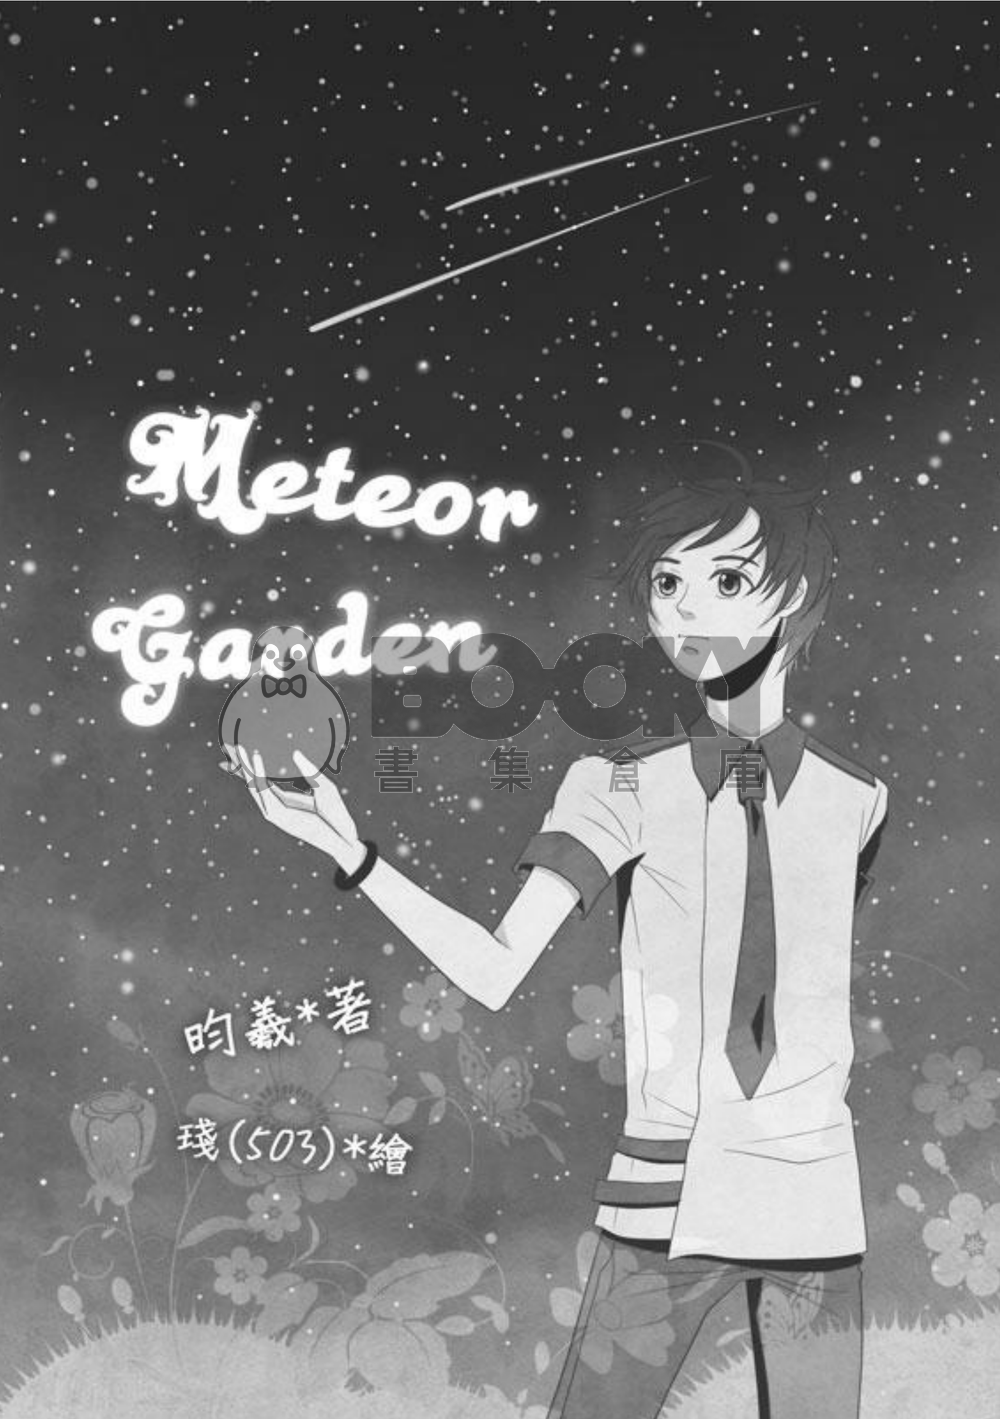 Meteor Garden 試閱圖片